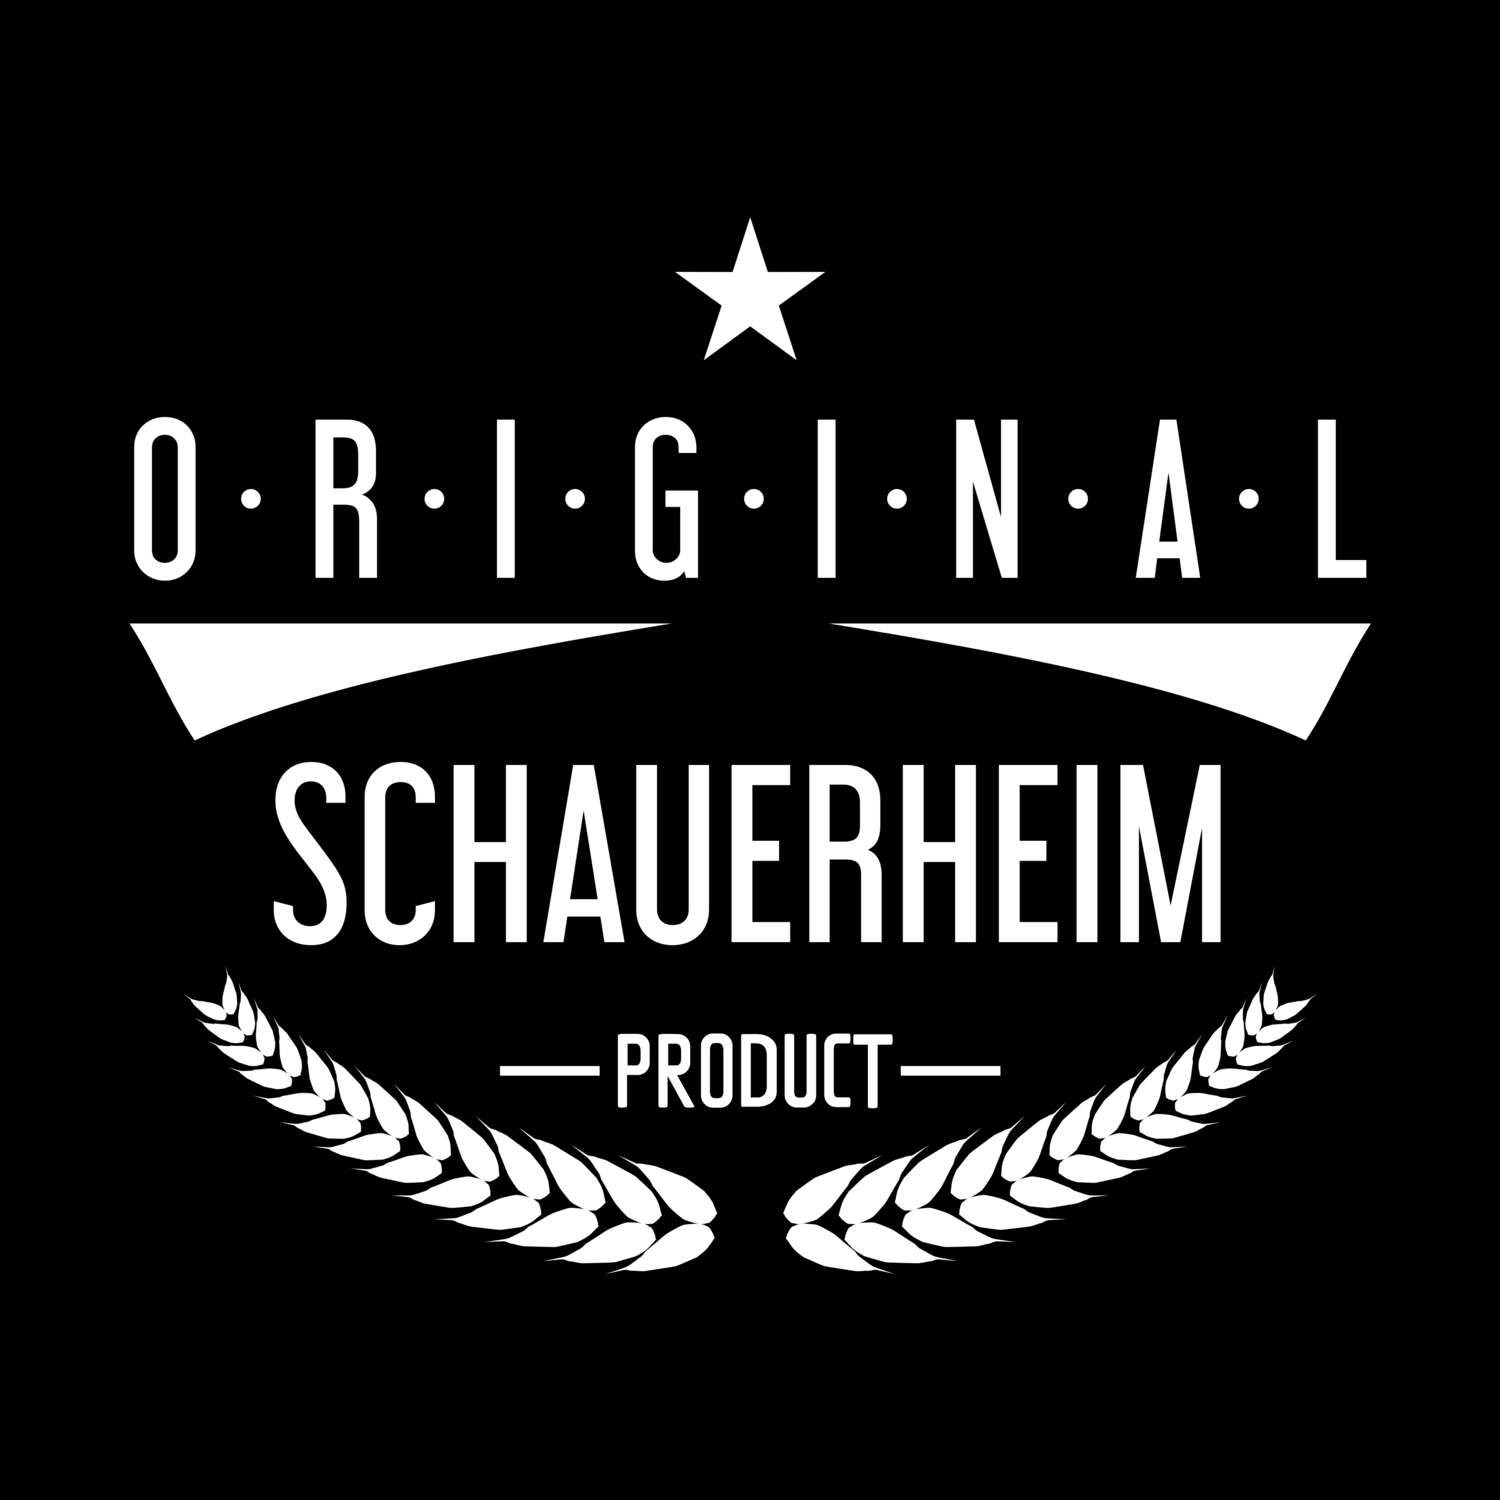 Schauerheim T-Shirt »Original Product«